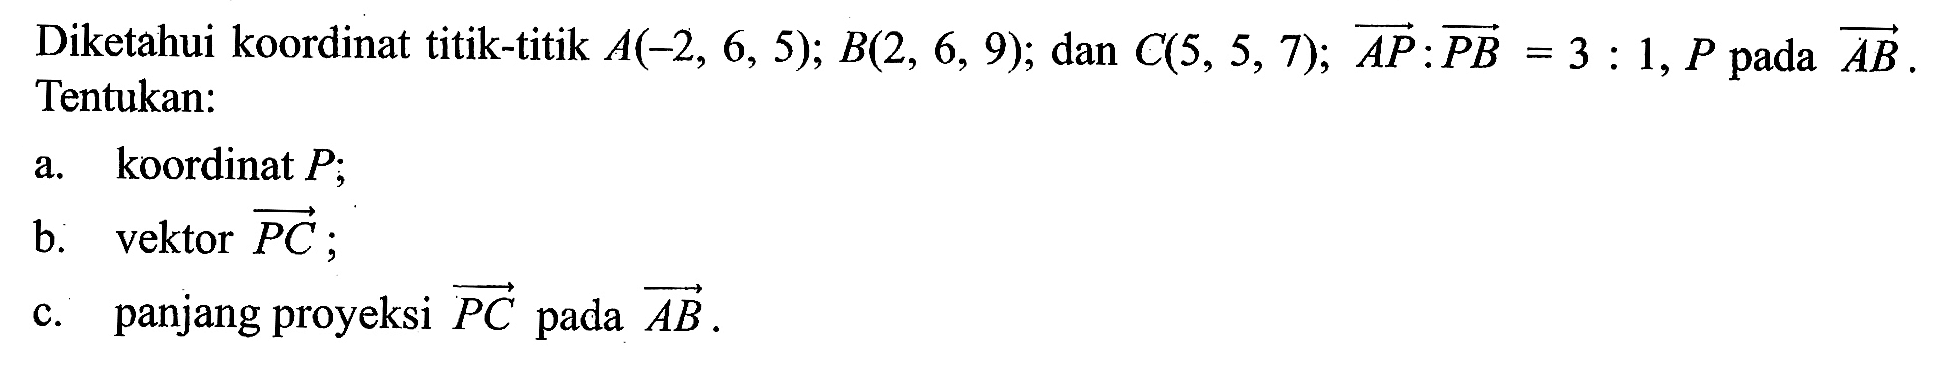 Diketahui koordinat titik-titik A(-2,6,5); B(2,6,9); dan C(5,5,7); vektor AP:vektor PB=3:1, P pada vektor AB. Tentukan:a. koordinat P; b. vektor vektor PC; c. panjang proyeksi vektor PC pada vektor AB.